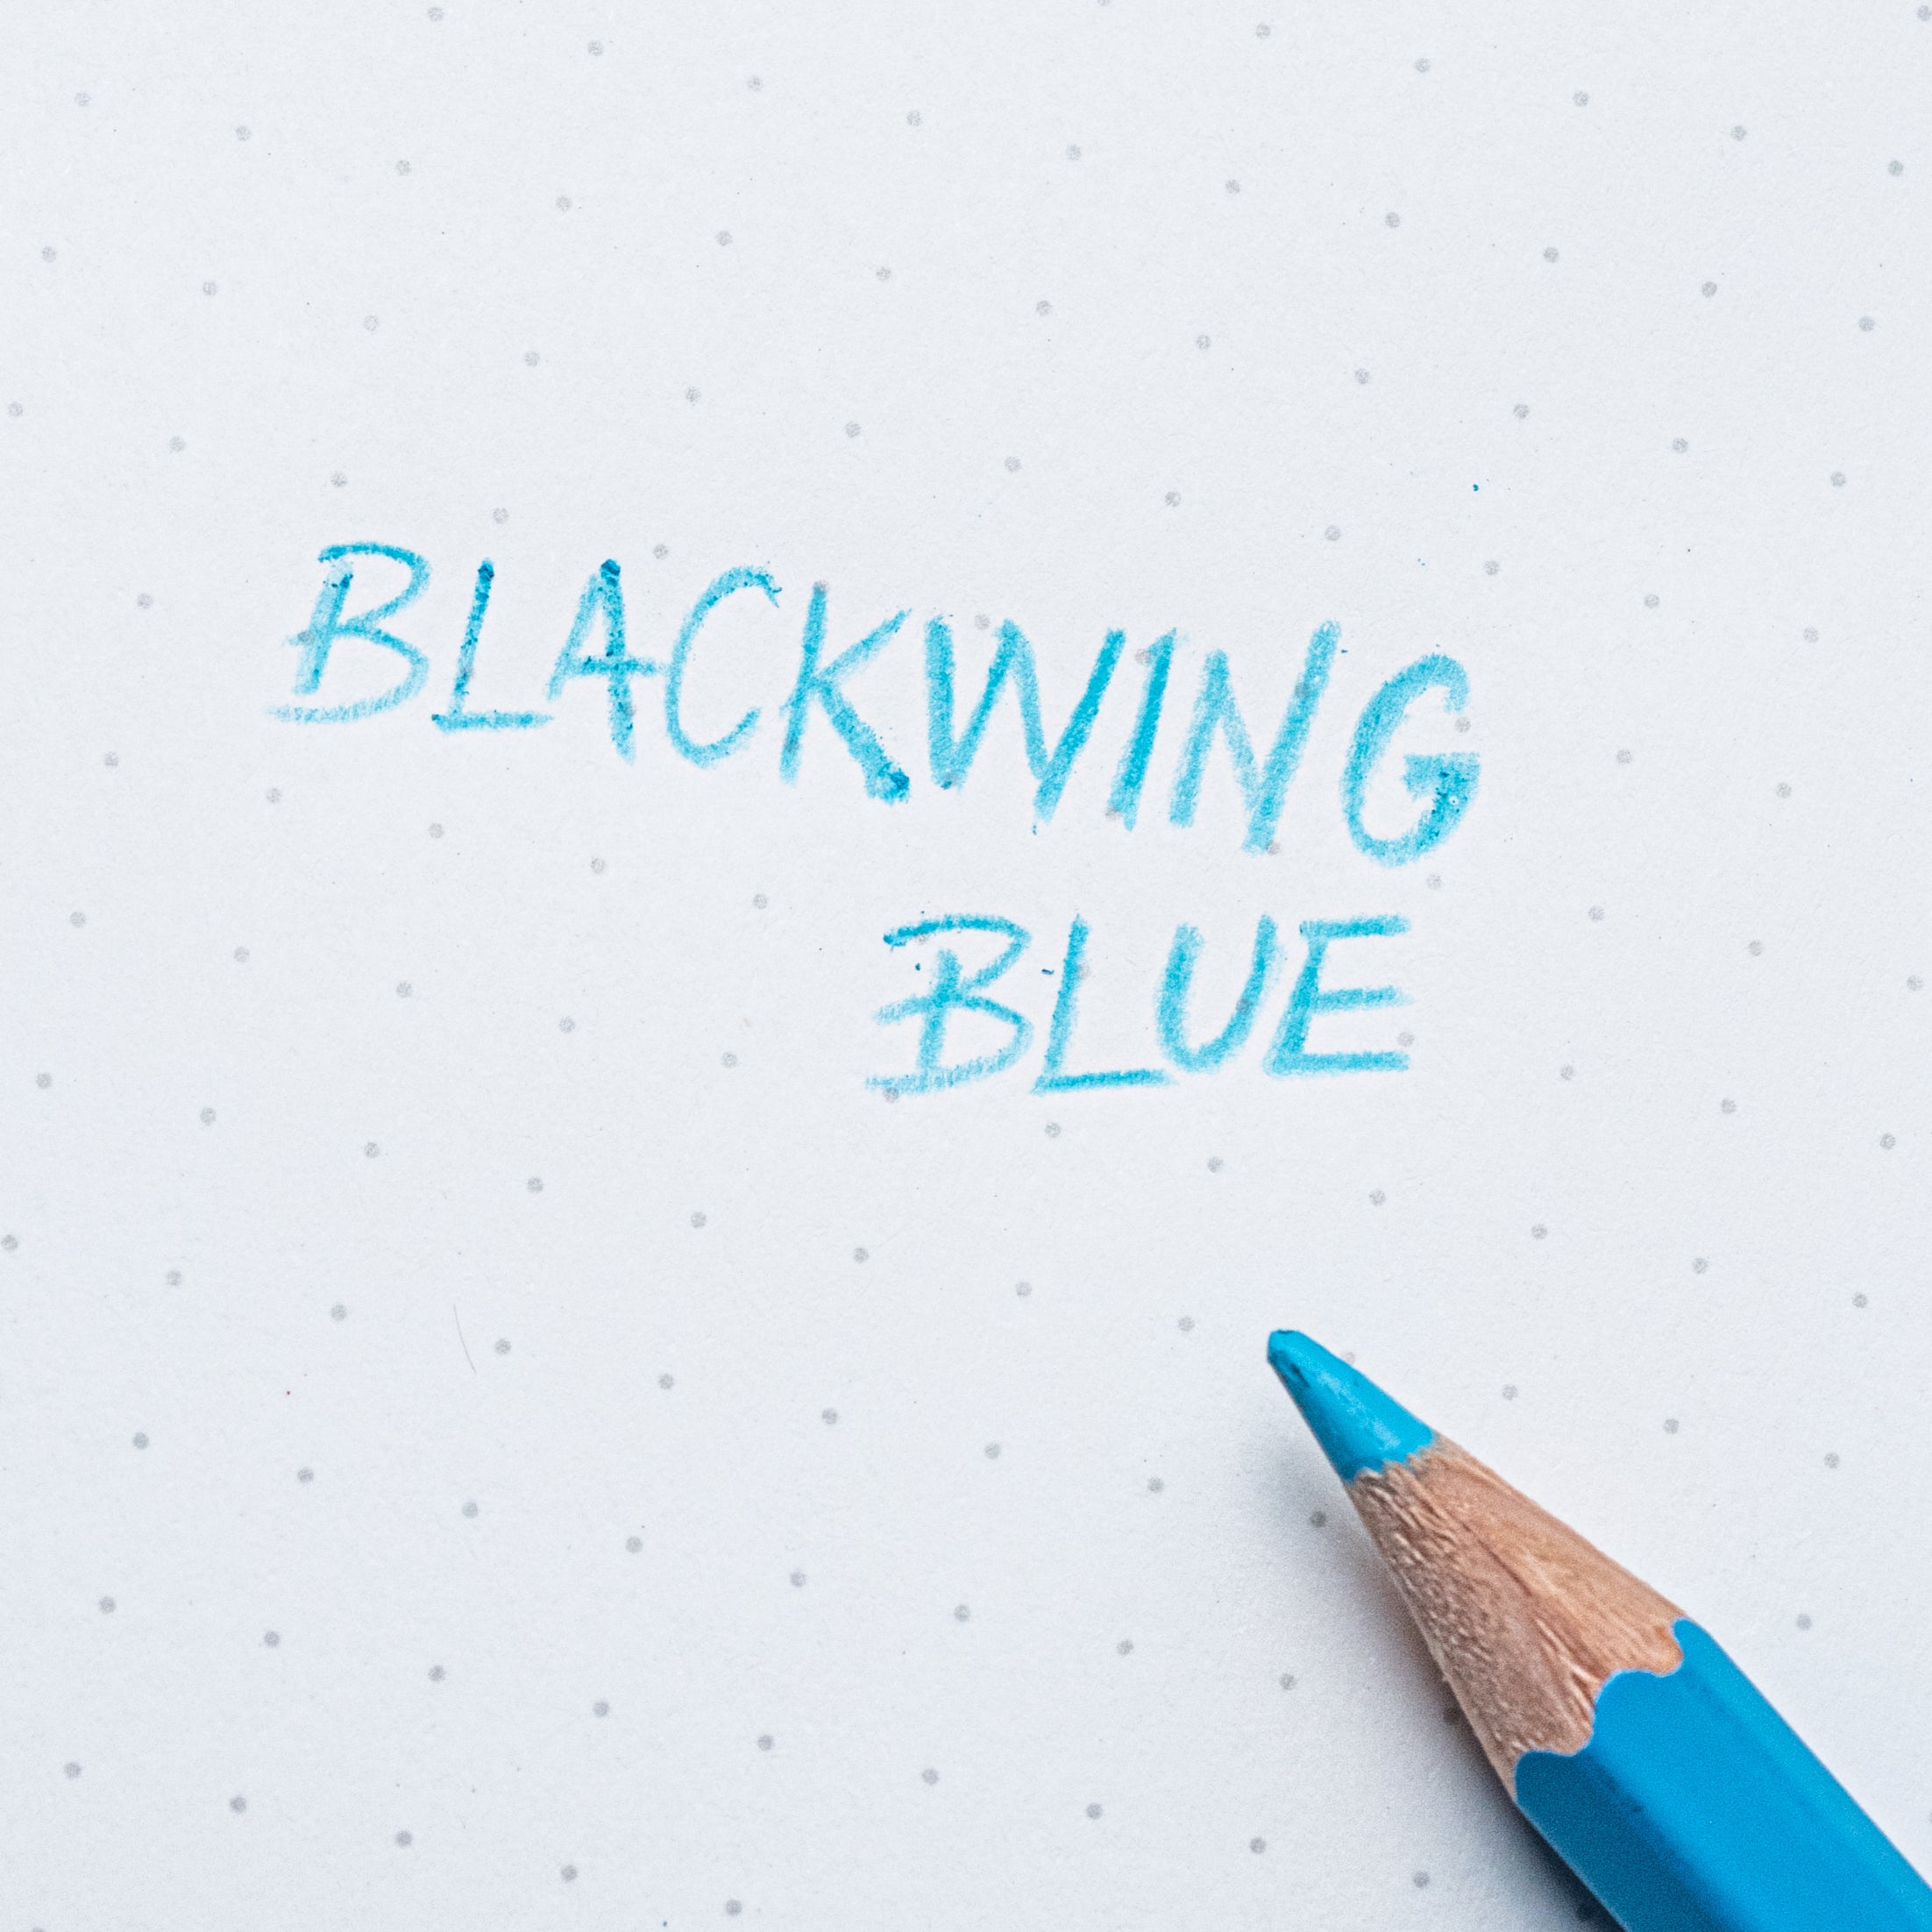 Blackwing Blue (Set of 4)